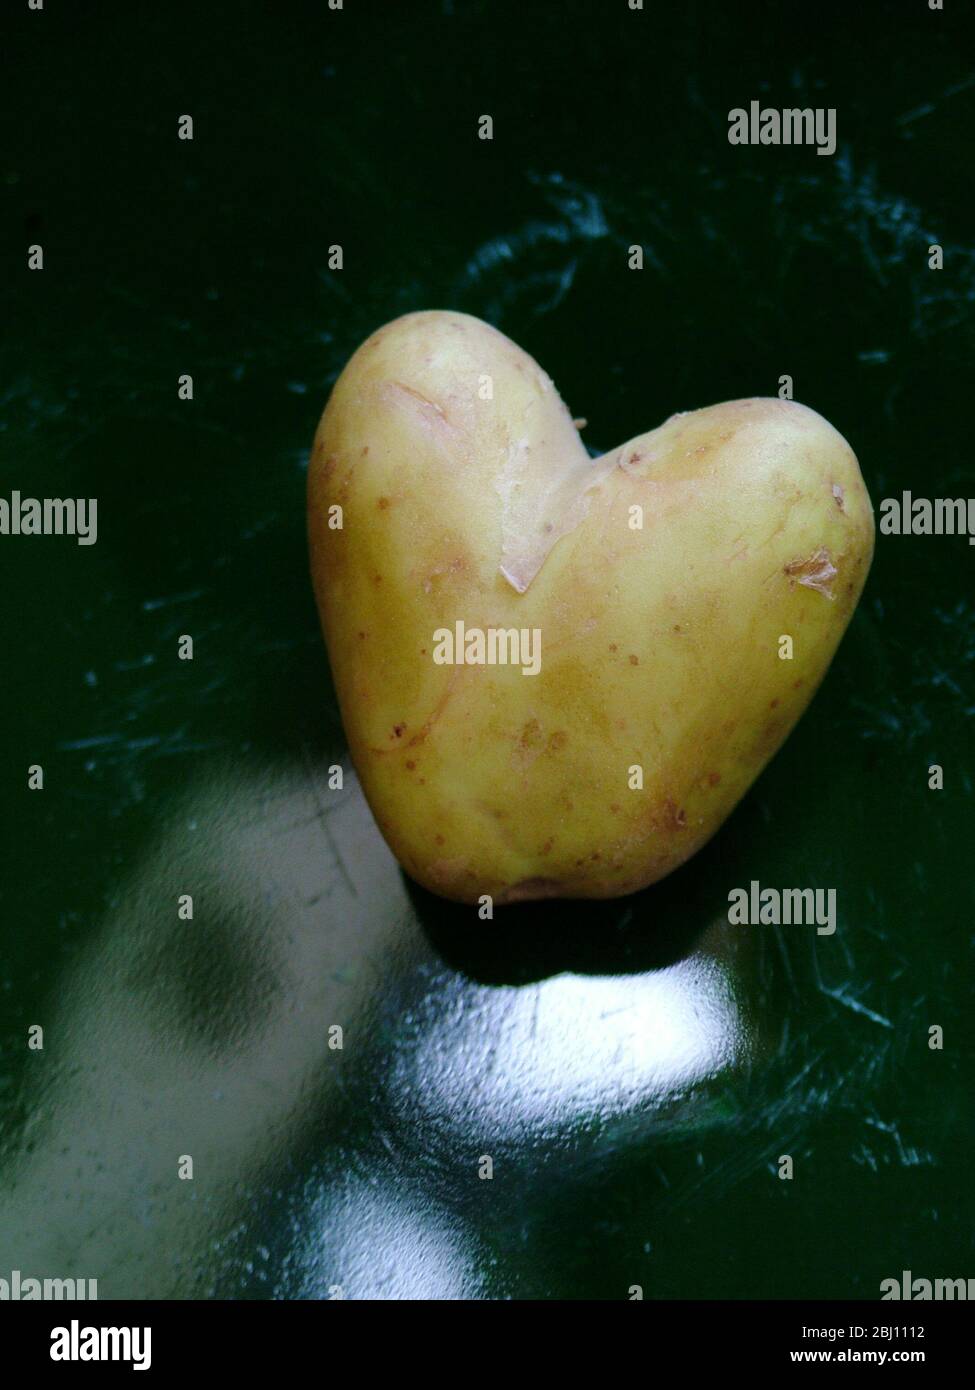 Patata nueva en forma de corazón impar encontrada en las patatas empaquetadas del supermercado - Foto de stock